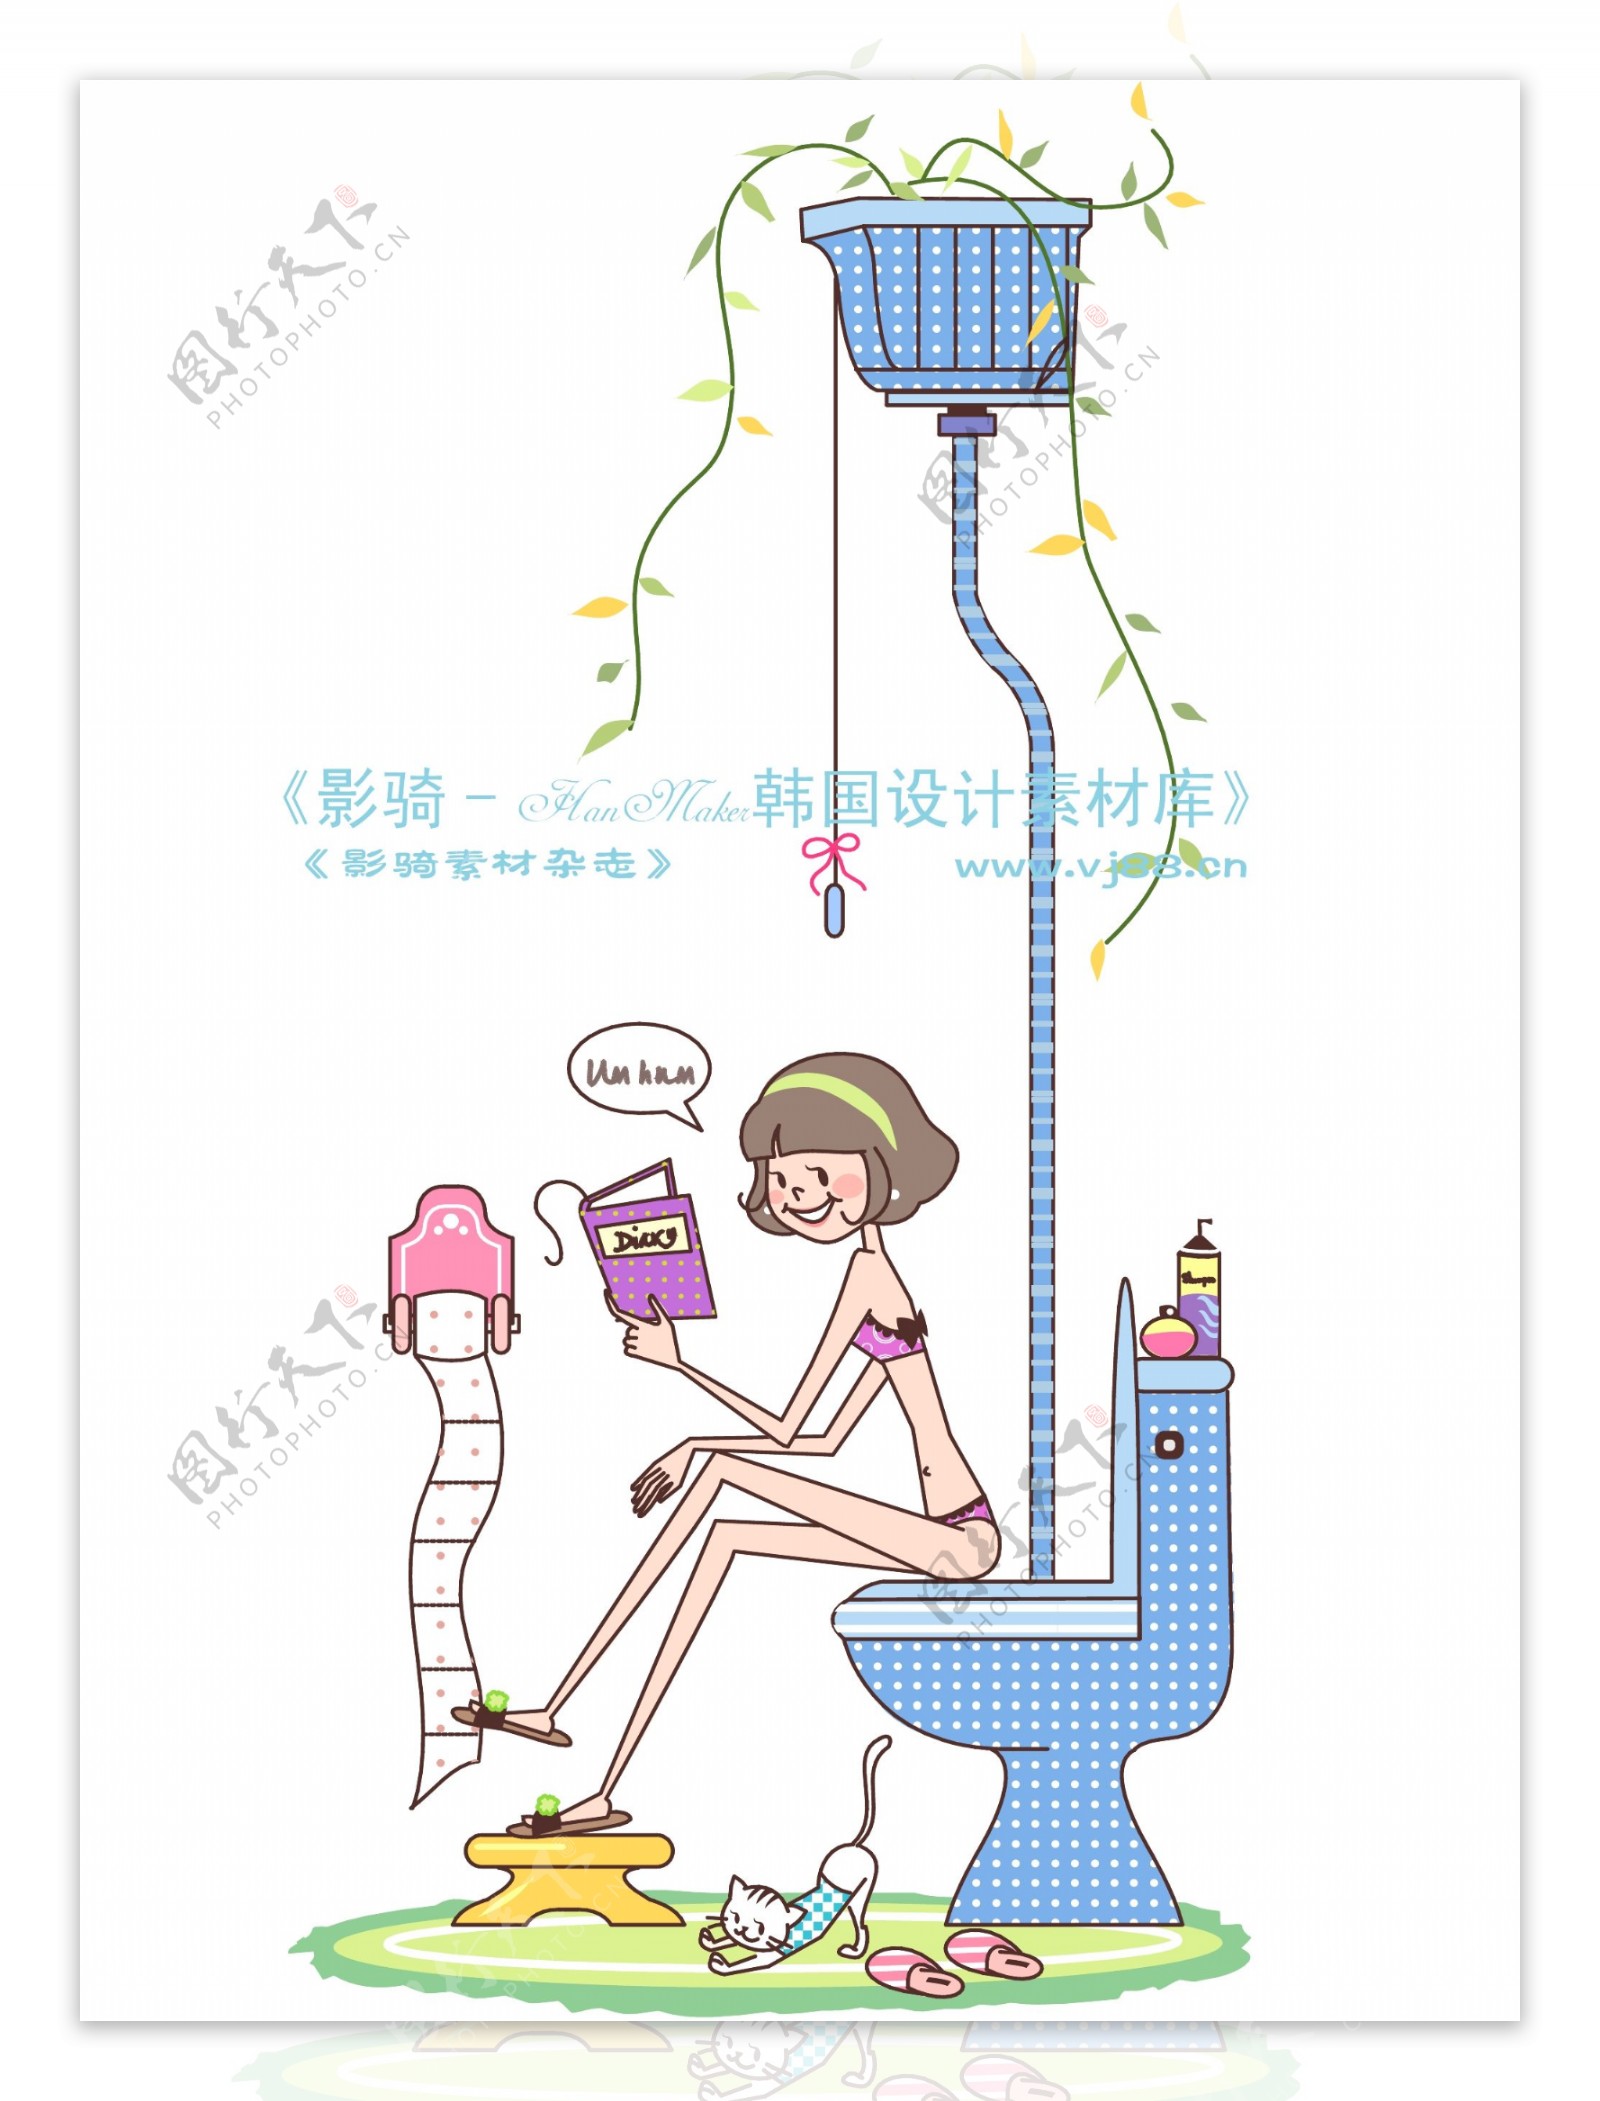 时尚简笔插画矢量素材矢量图片HanMaker韩国设计素材库